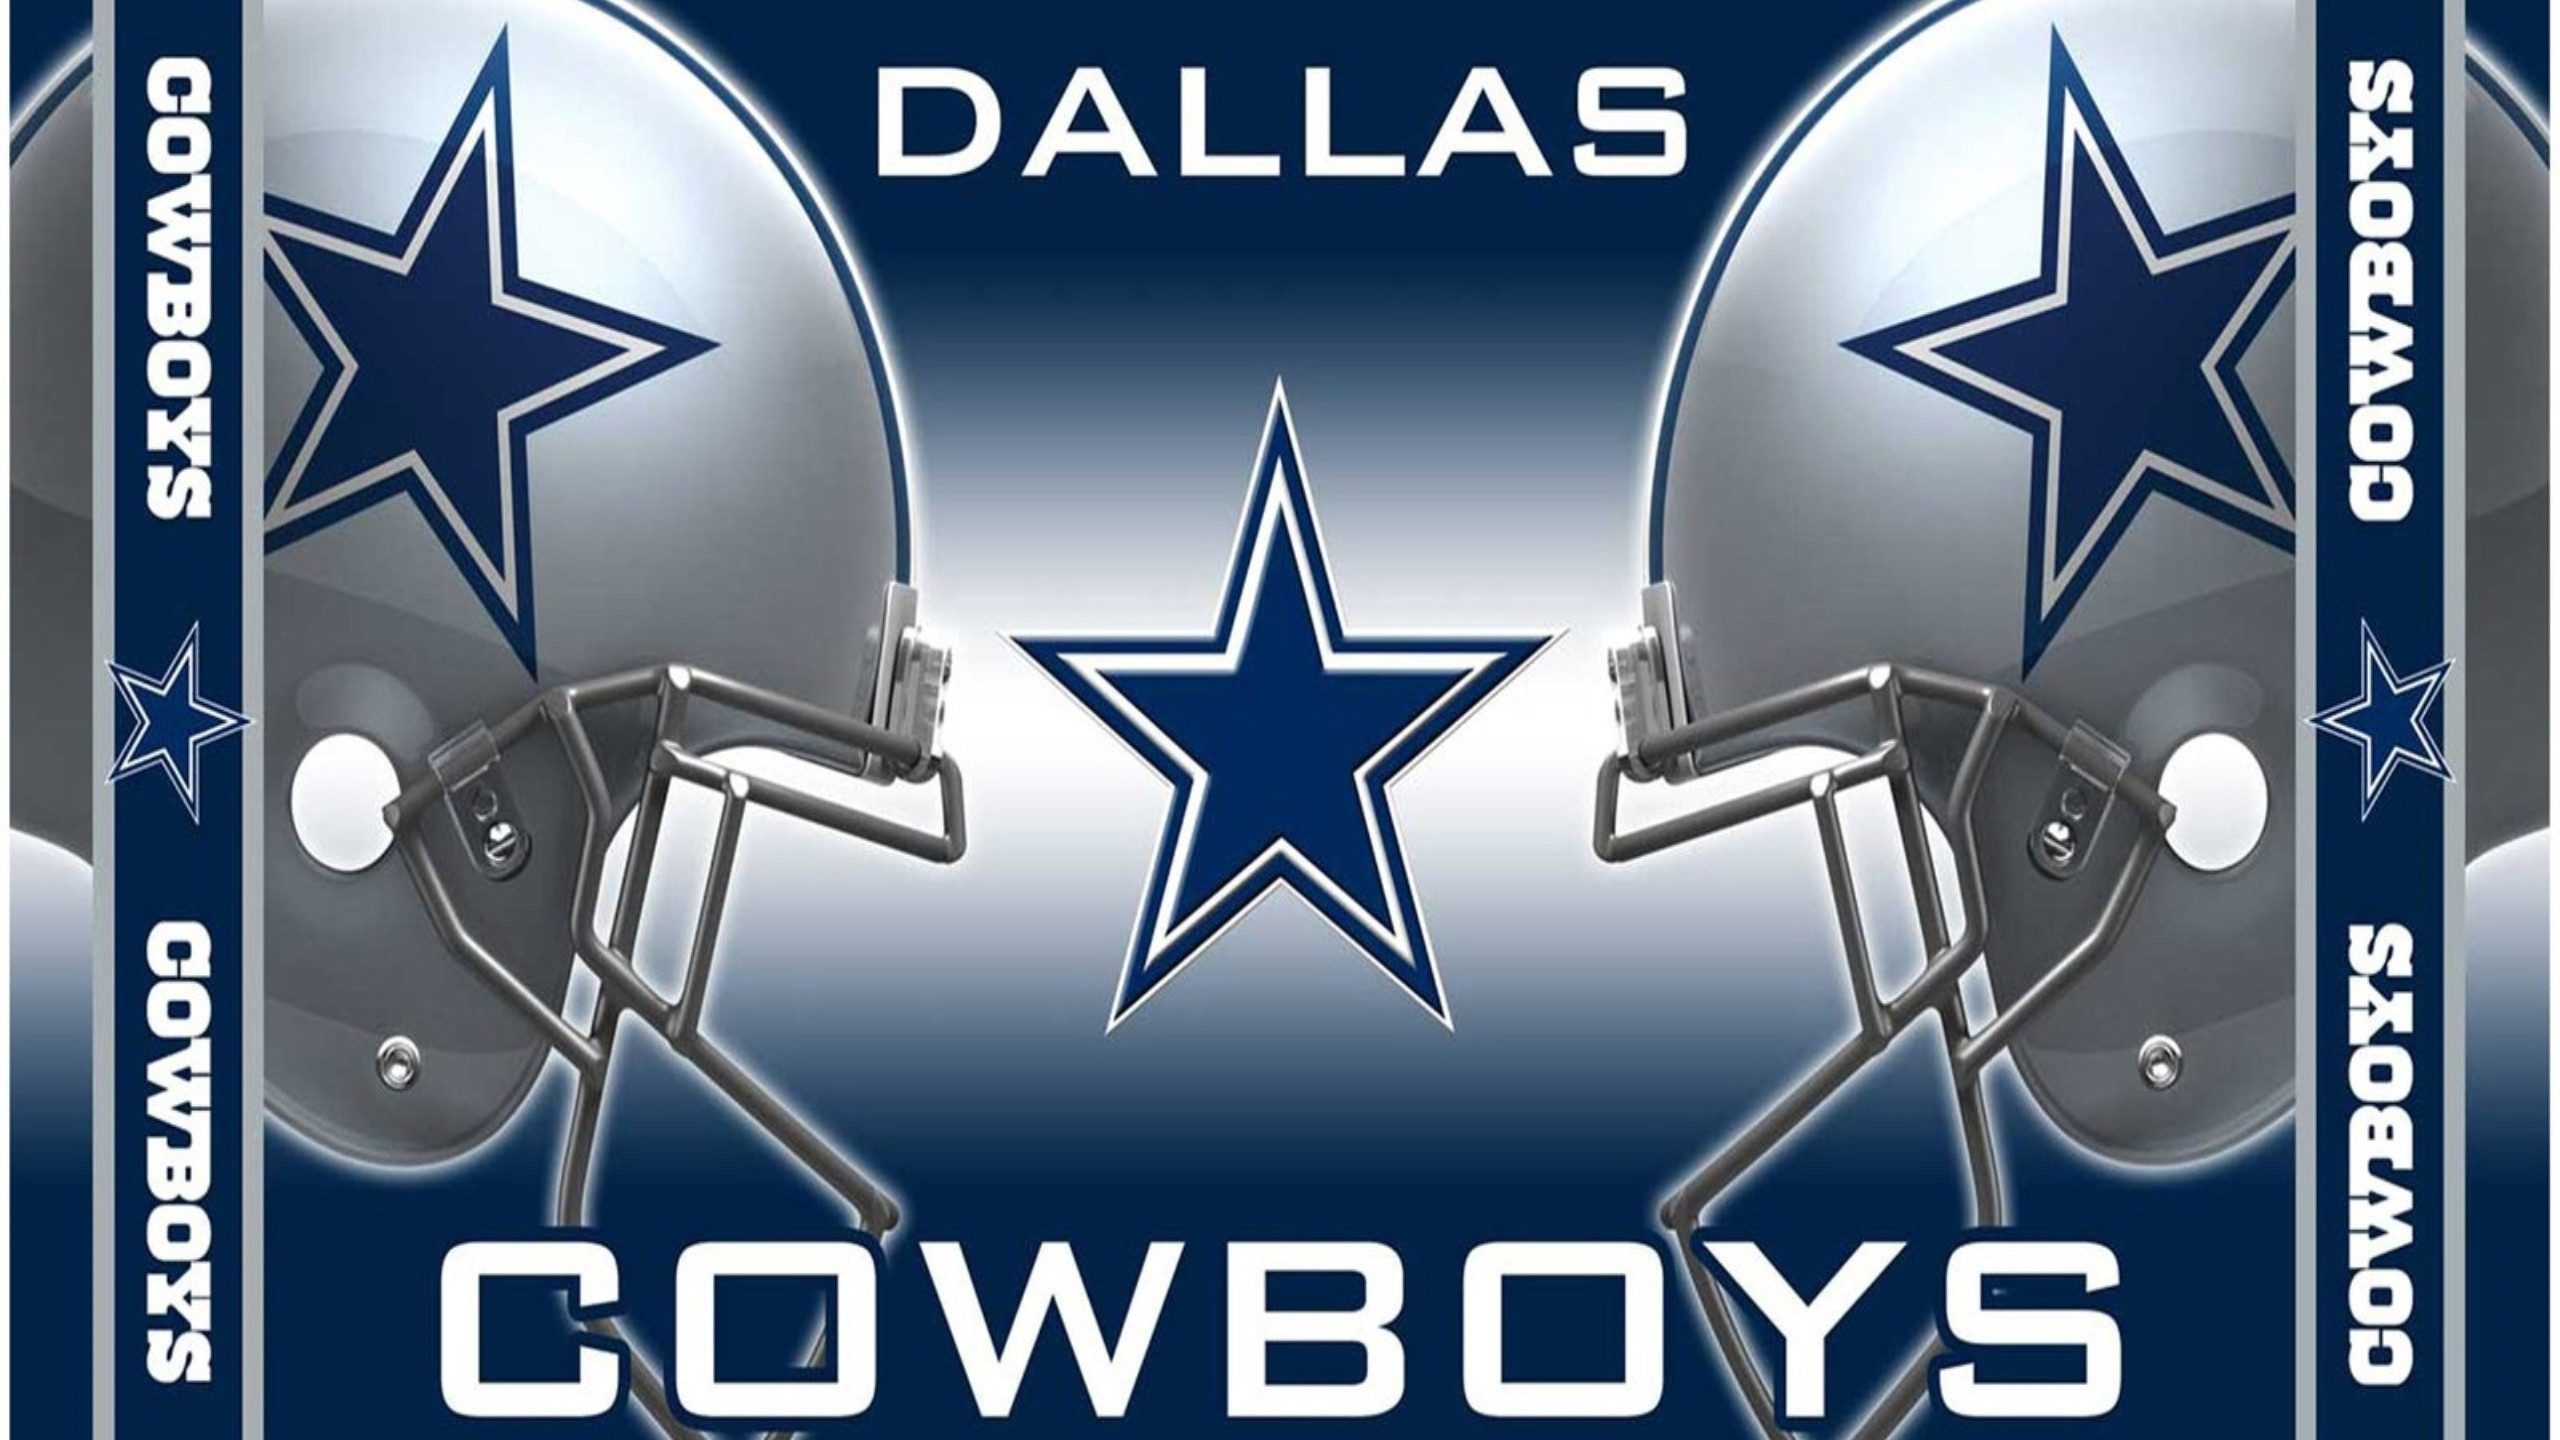 2560x1440 Dallas Cowboys Room Wallpaper Amazing Free Wallpaper Dallas Cowboys